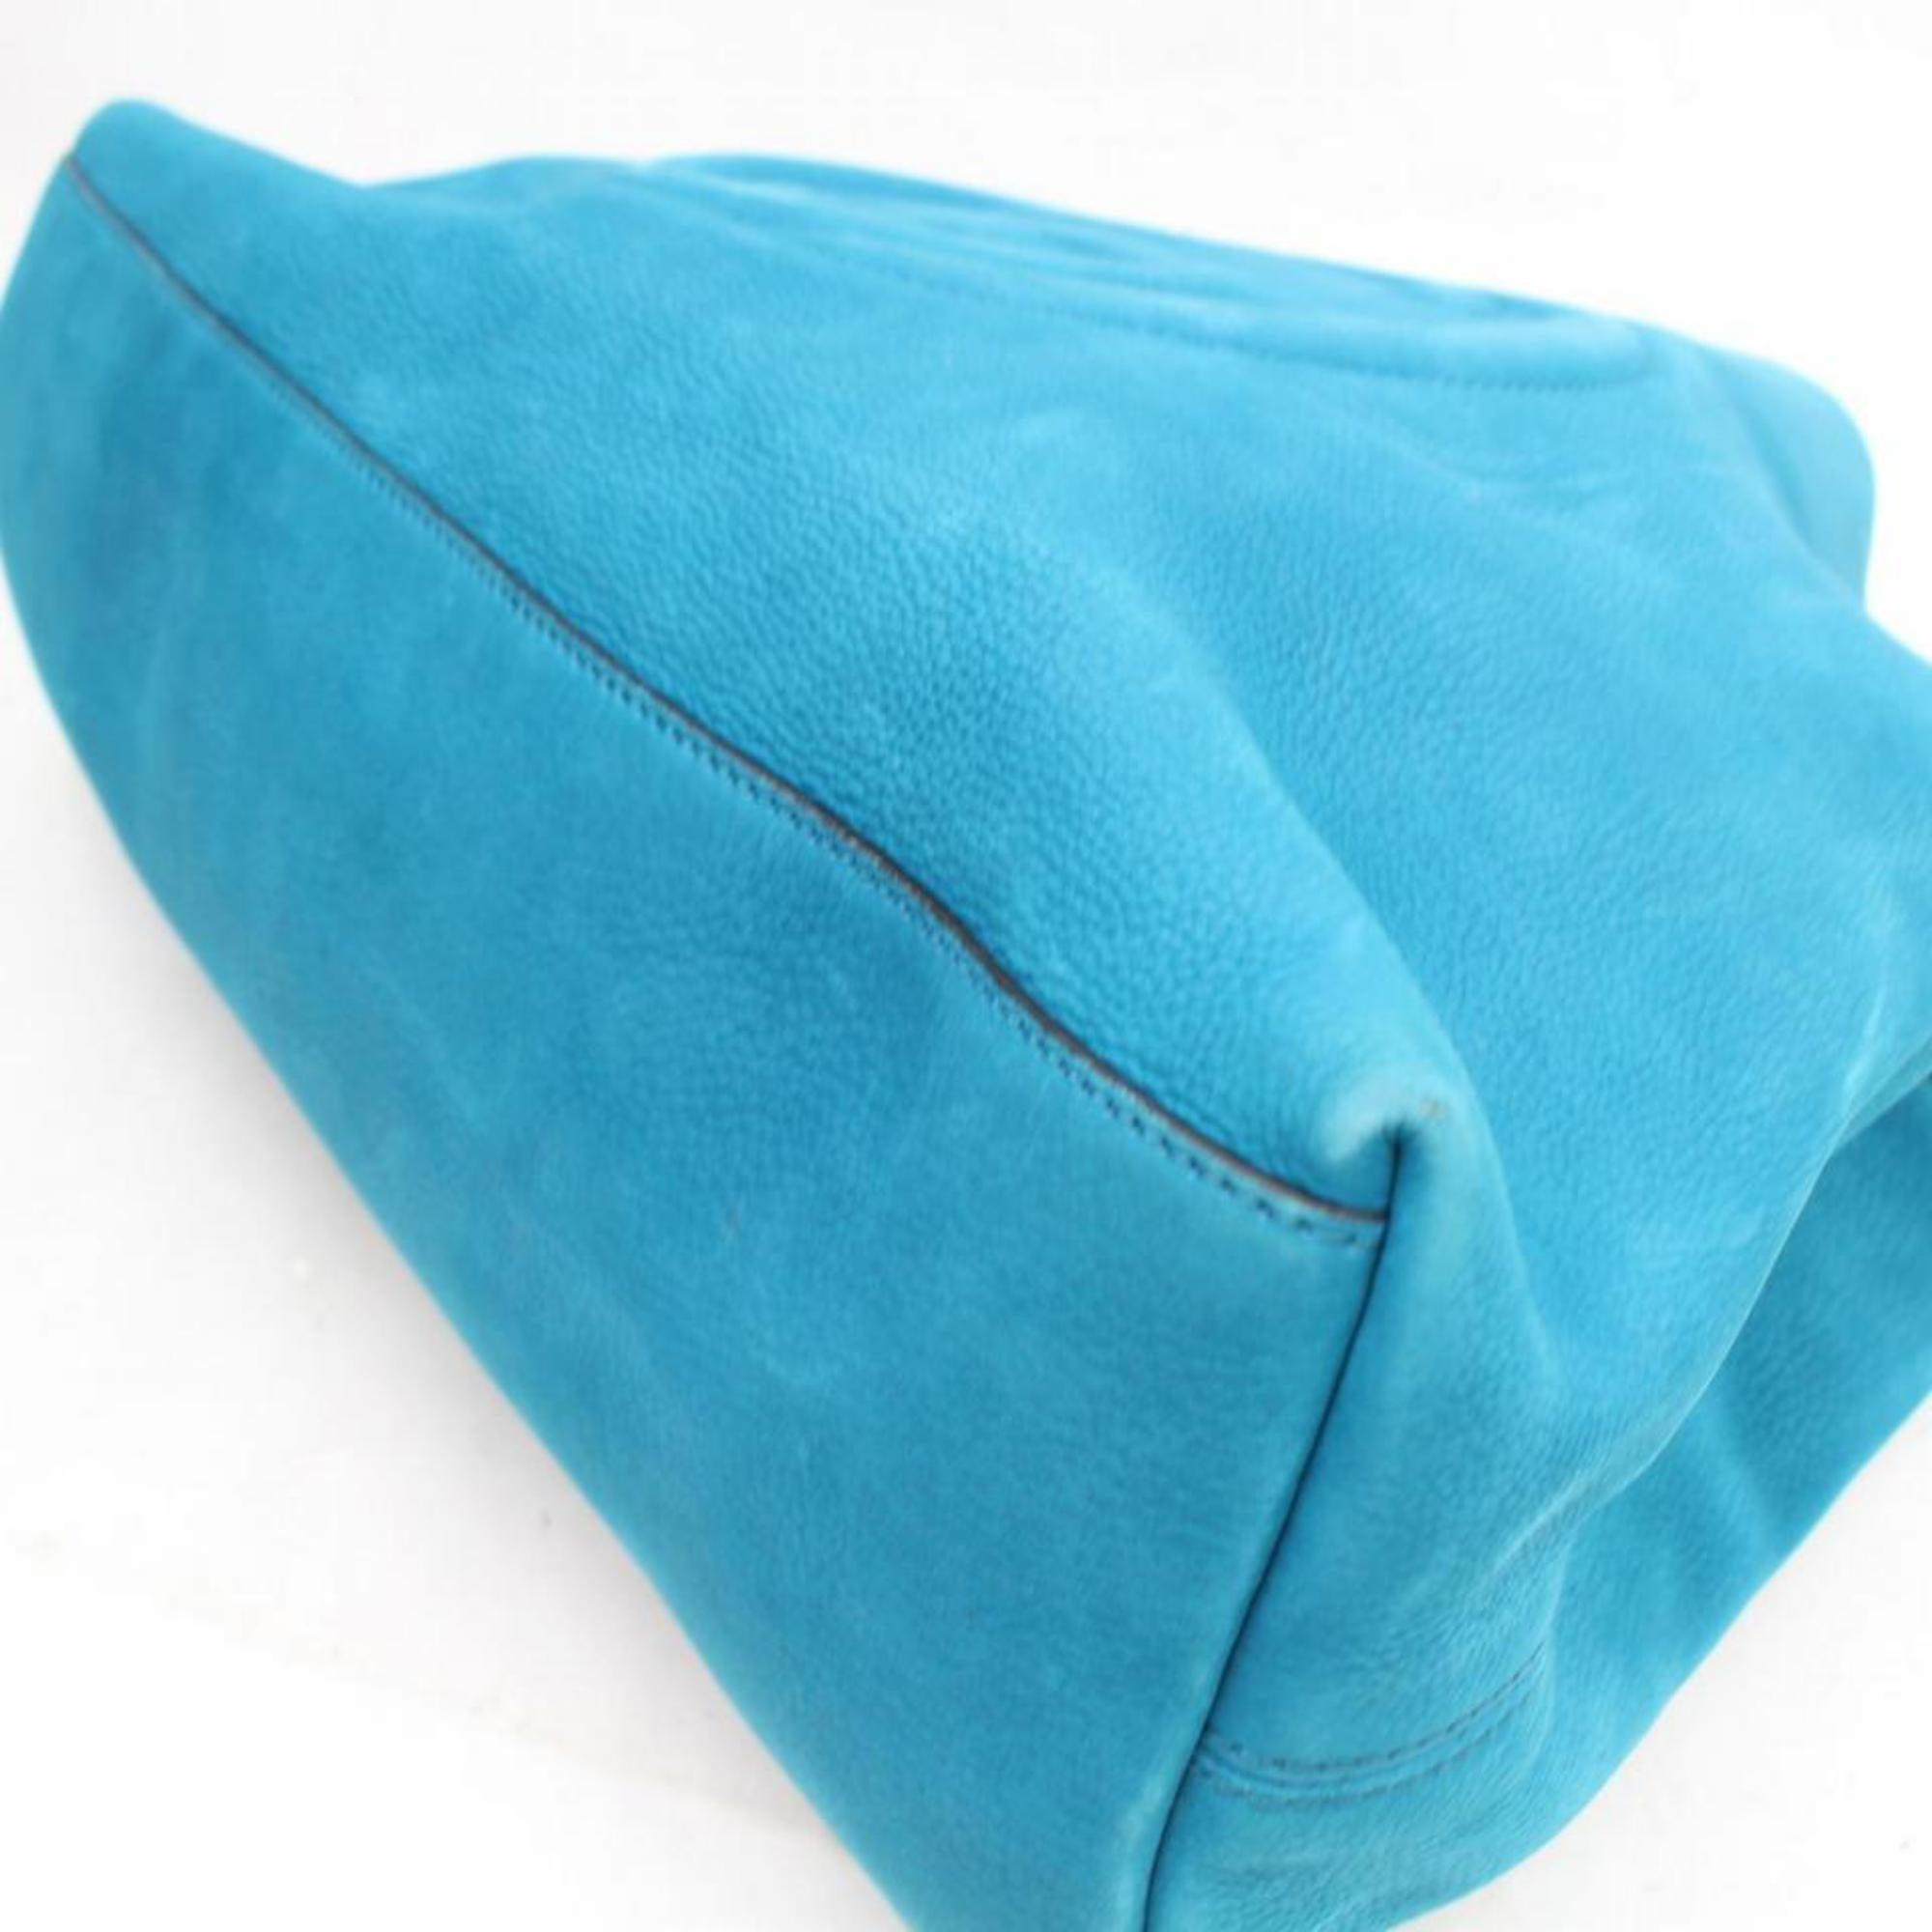 Gucci Soho Fringe Tassel Chain Tote 869786 Blue Nubuck Leather Shoulder Bag For Sale 8